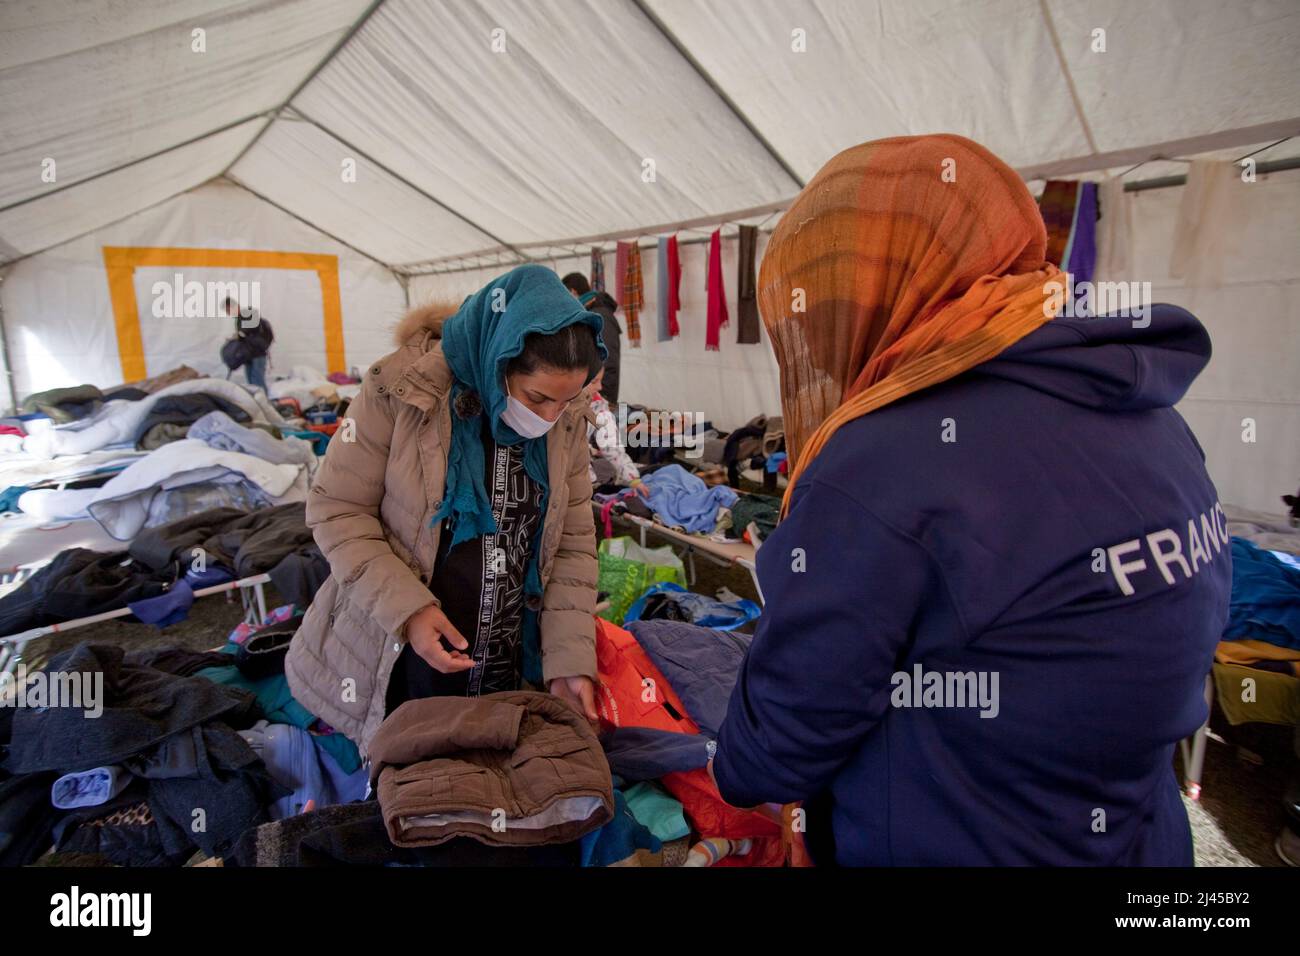 Briançon (Alpes françaises, sud-est de la France), 5 novembre 2021: Deux femmes à la recherche de vêtements pour leurs enfants dans une pile de vêtements donnés par l'habitude Banque D'Images